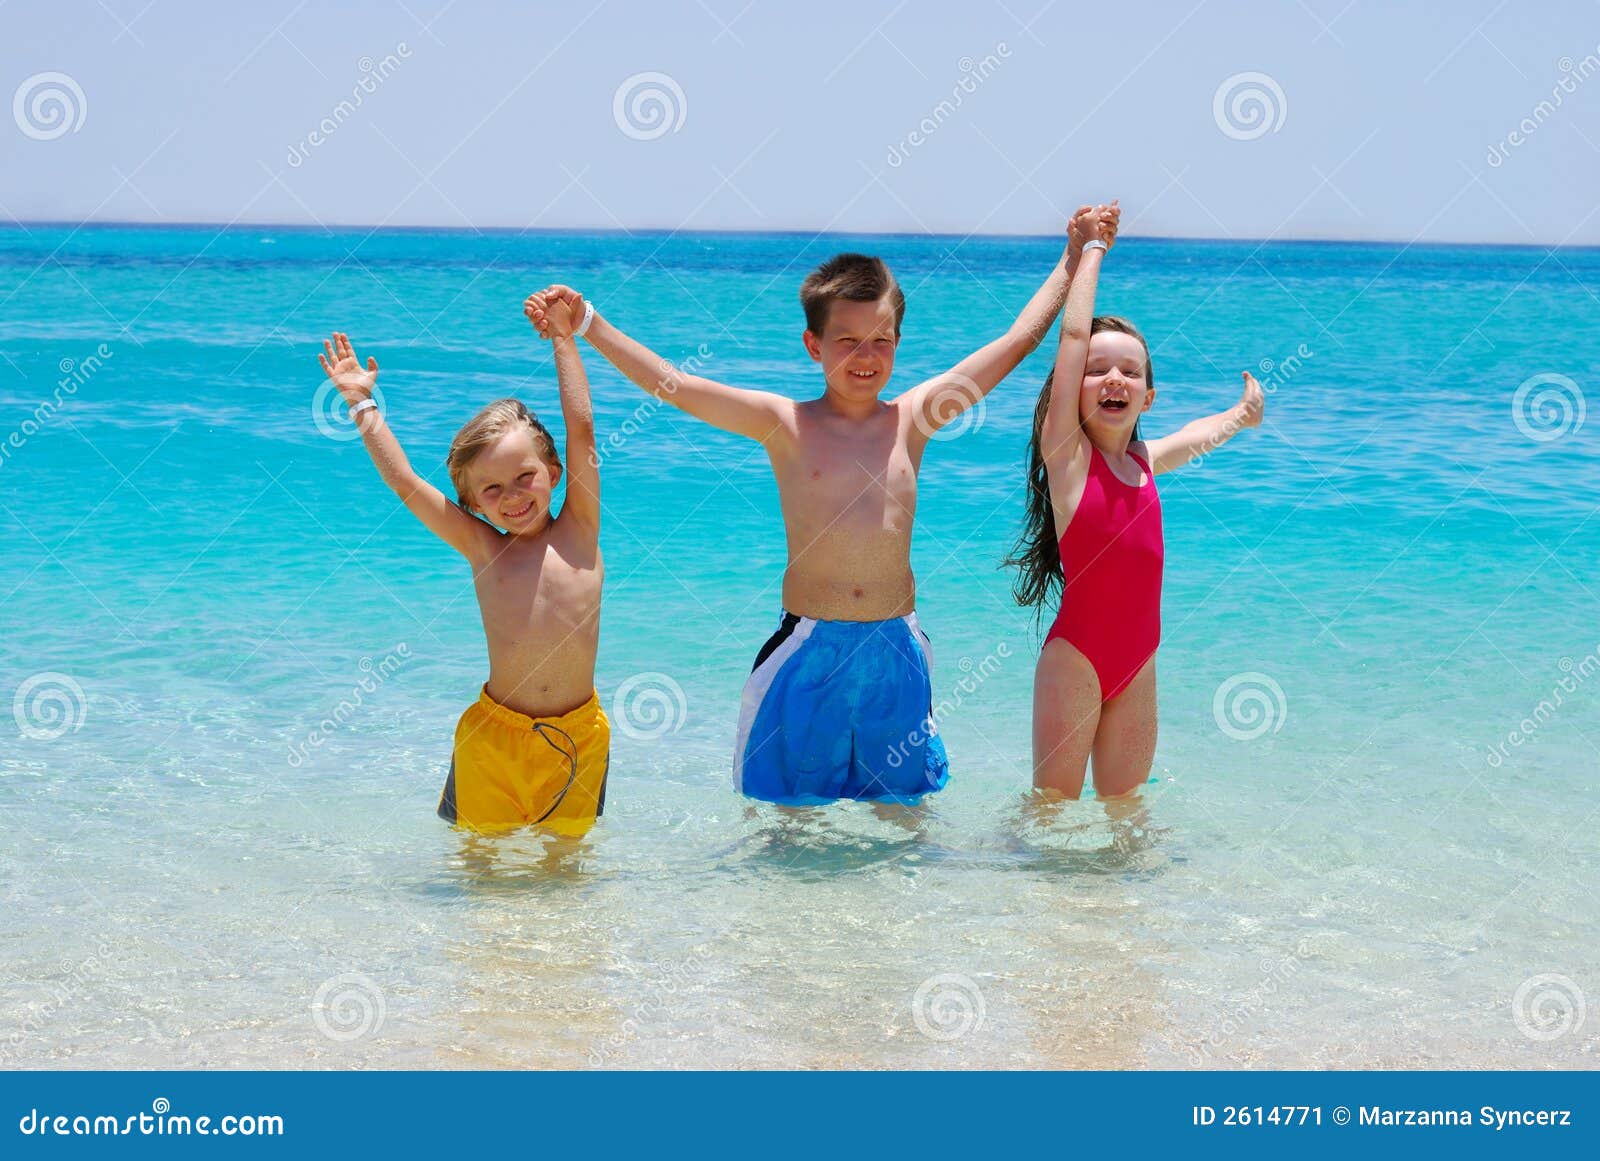 three children wading in ocean